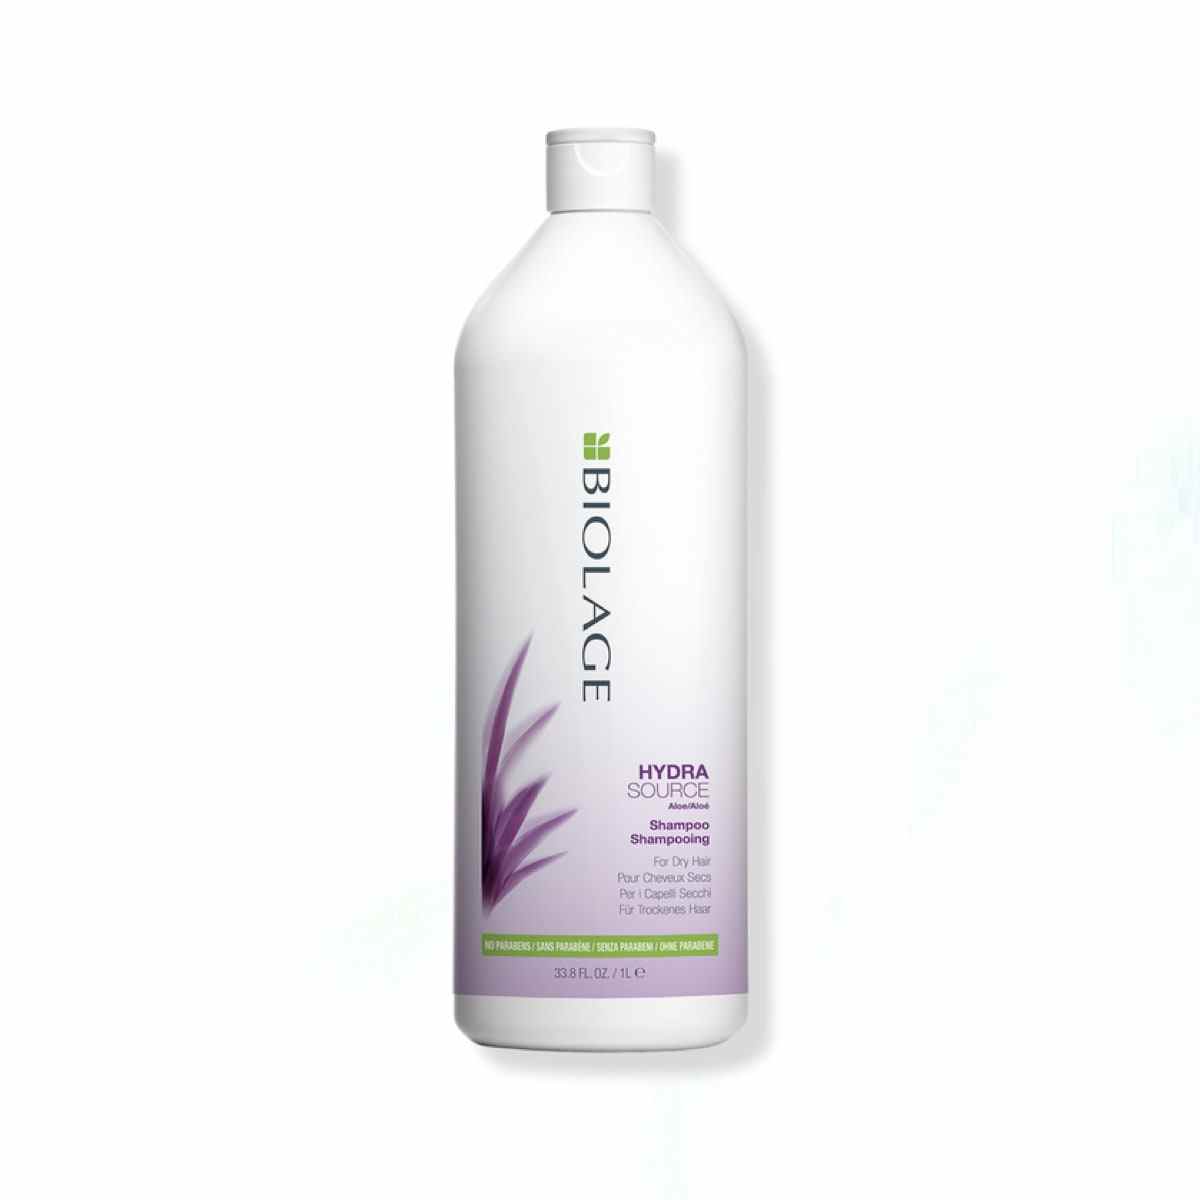 Weiße Jumbo-Flasche Biolage Hydrasource Shampoo auf weißem Hintergrund